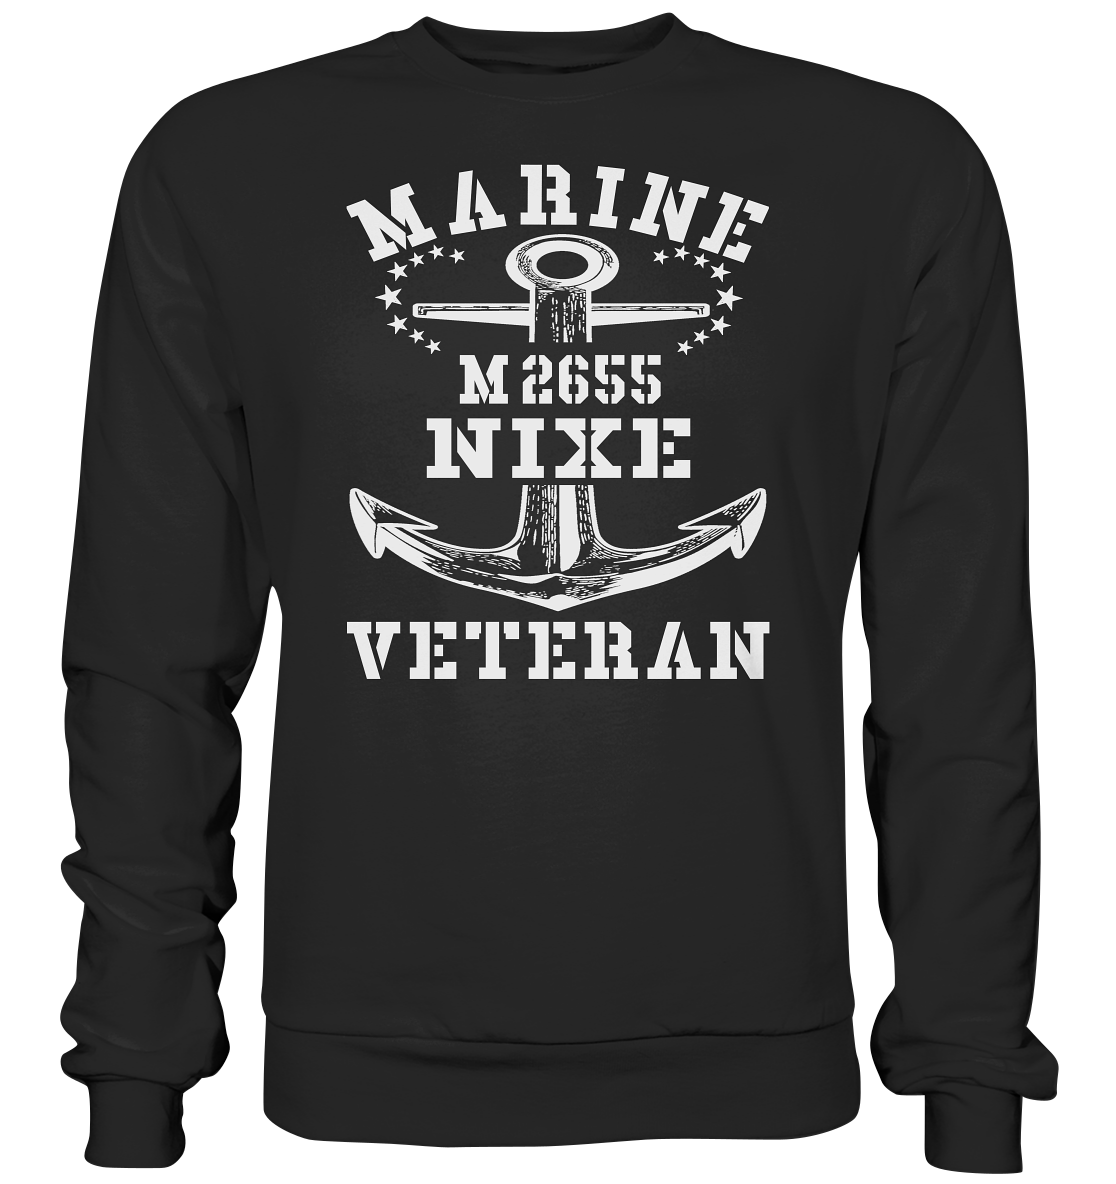 BiMi M2655 NIXE Marine Veteran - Premium Sweatshirt